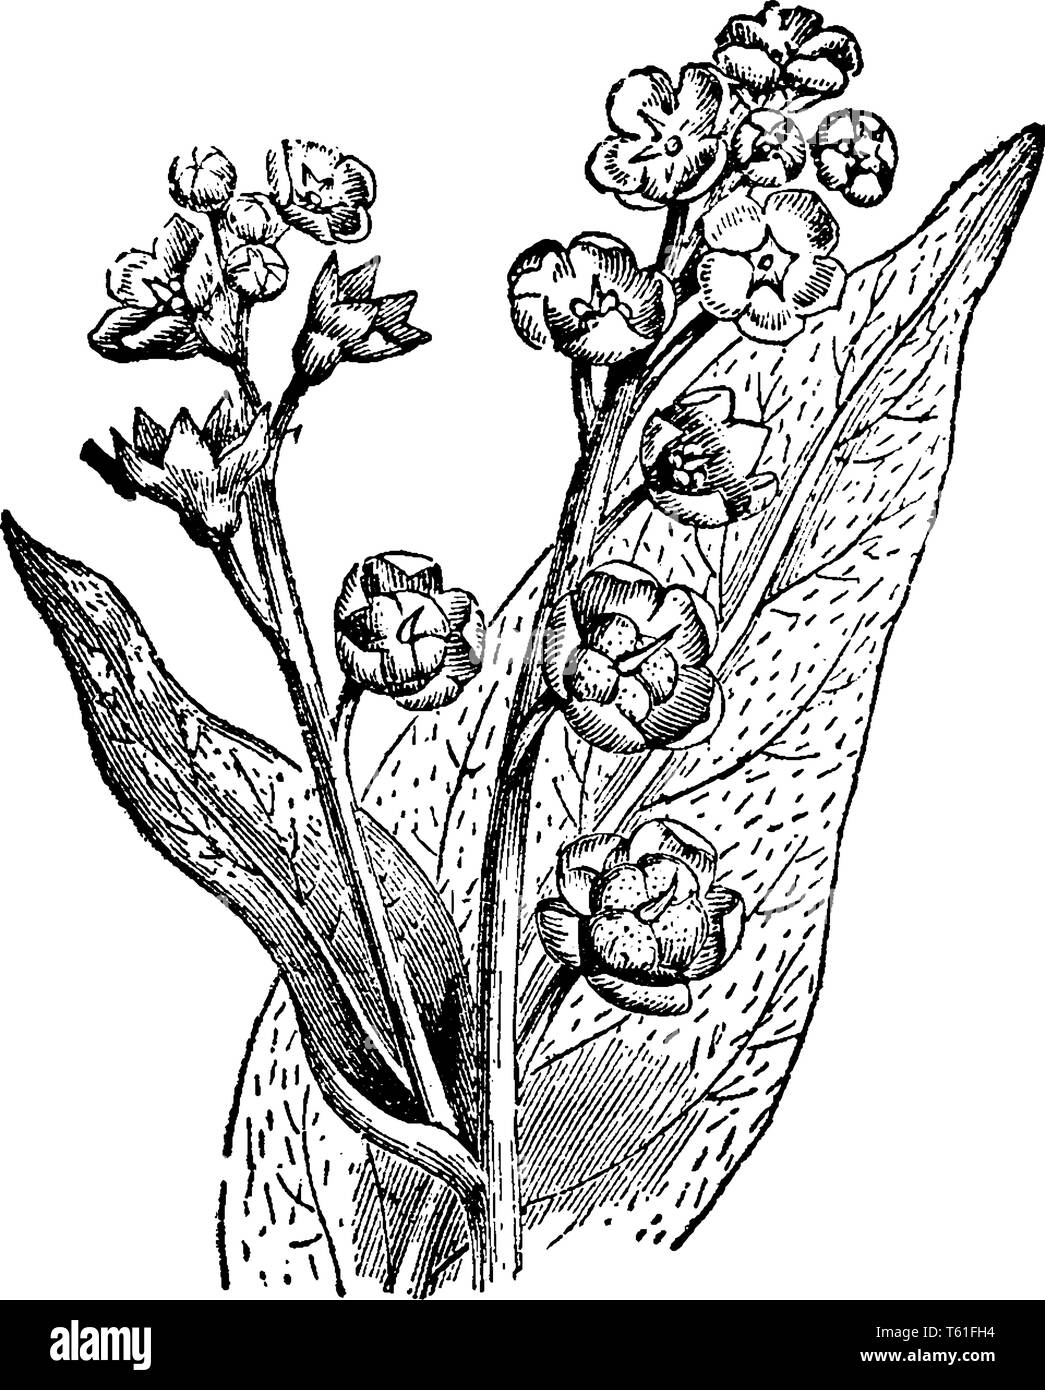 Les plantes matures hound langue maternelle ont une racine pivotante, avec brouillon, velues, des feuilles larges. Chaque fleur produit quatre graines triangulaires arrondis couverts de Hooke Illustration de Vecteur